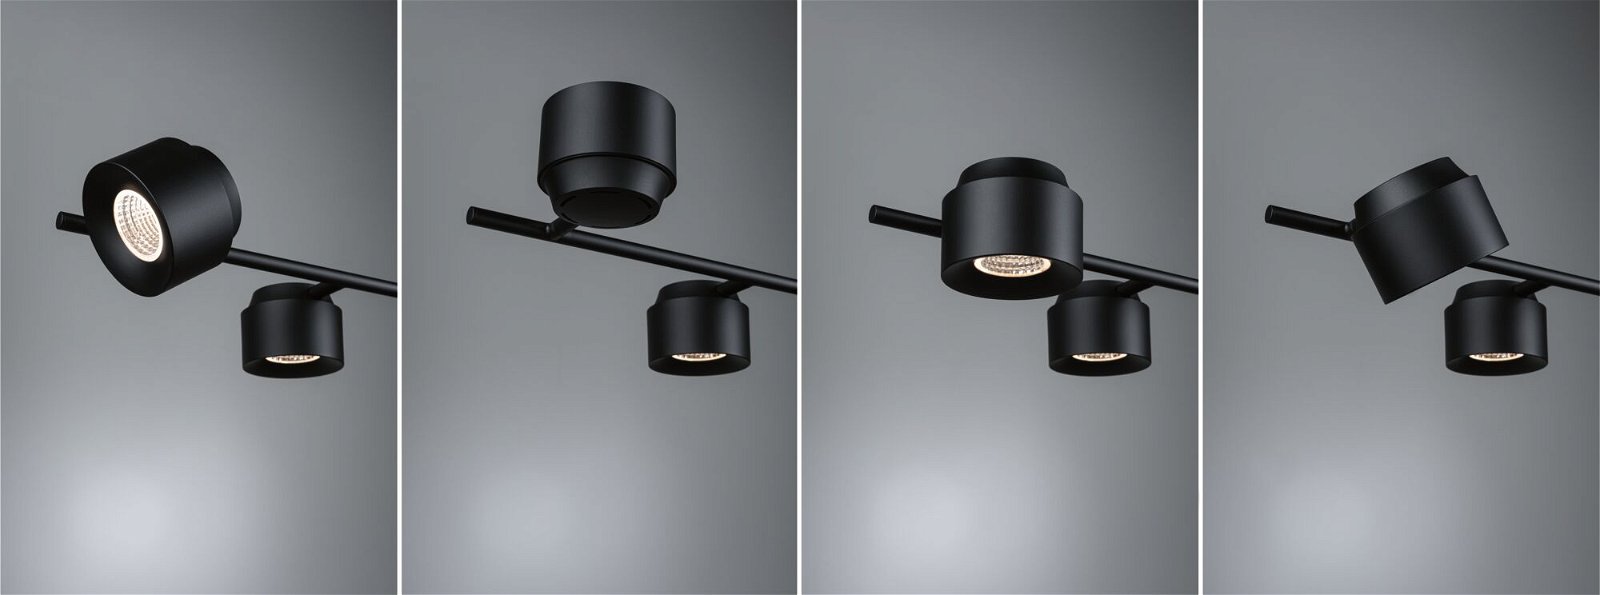 LED-hanglamp Smart Home Zigbee Puric Pane 6x6W Zwart